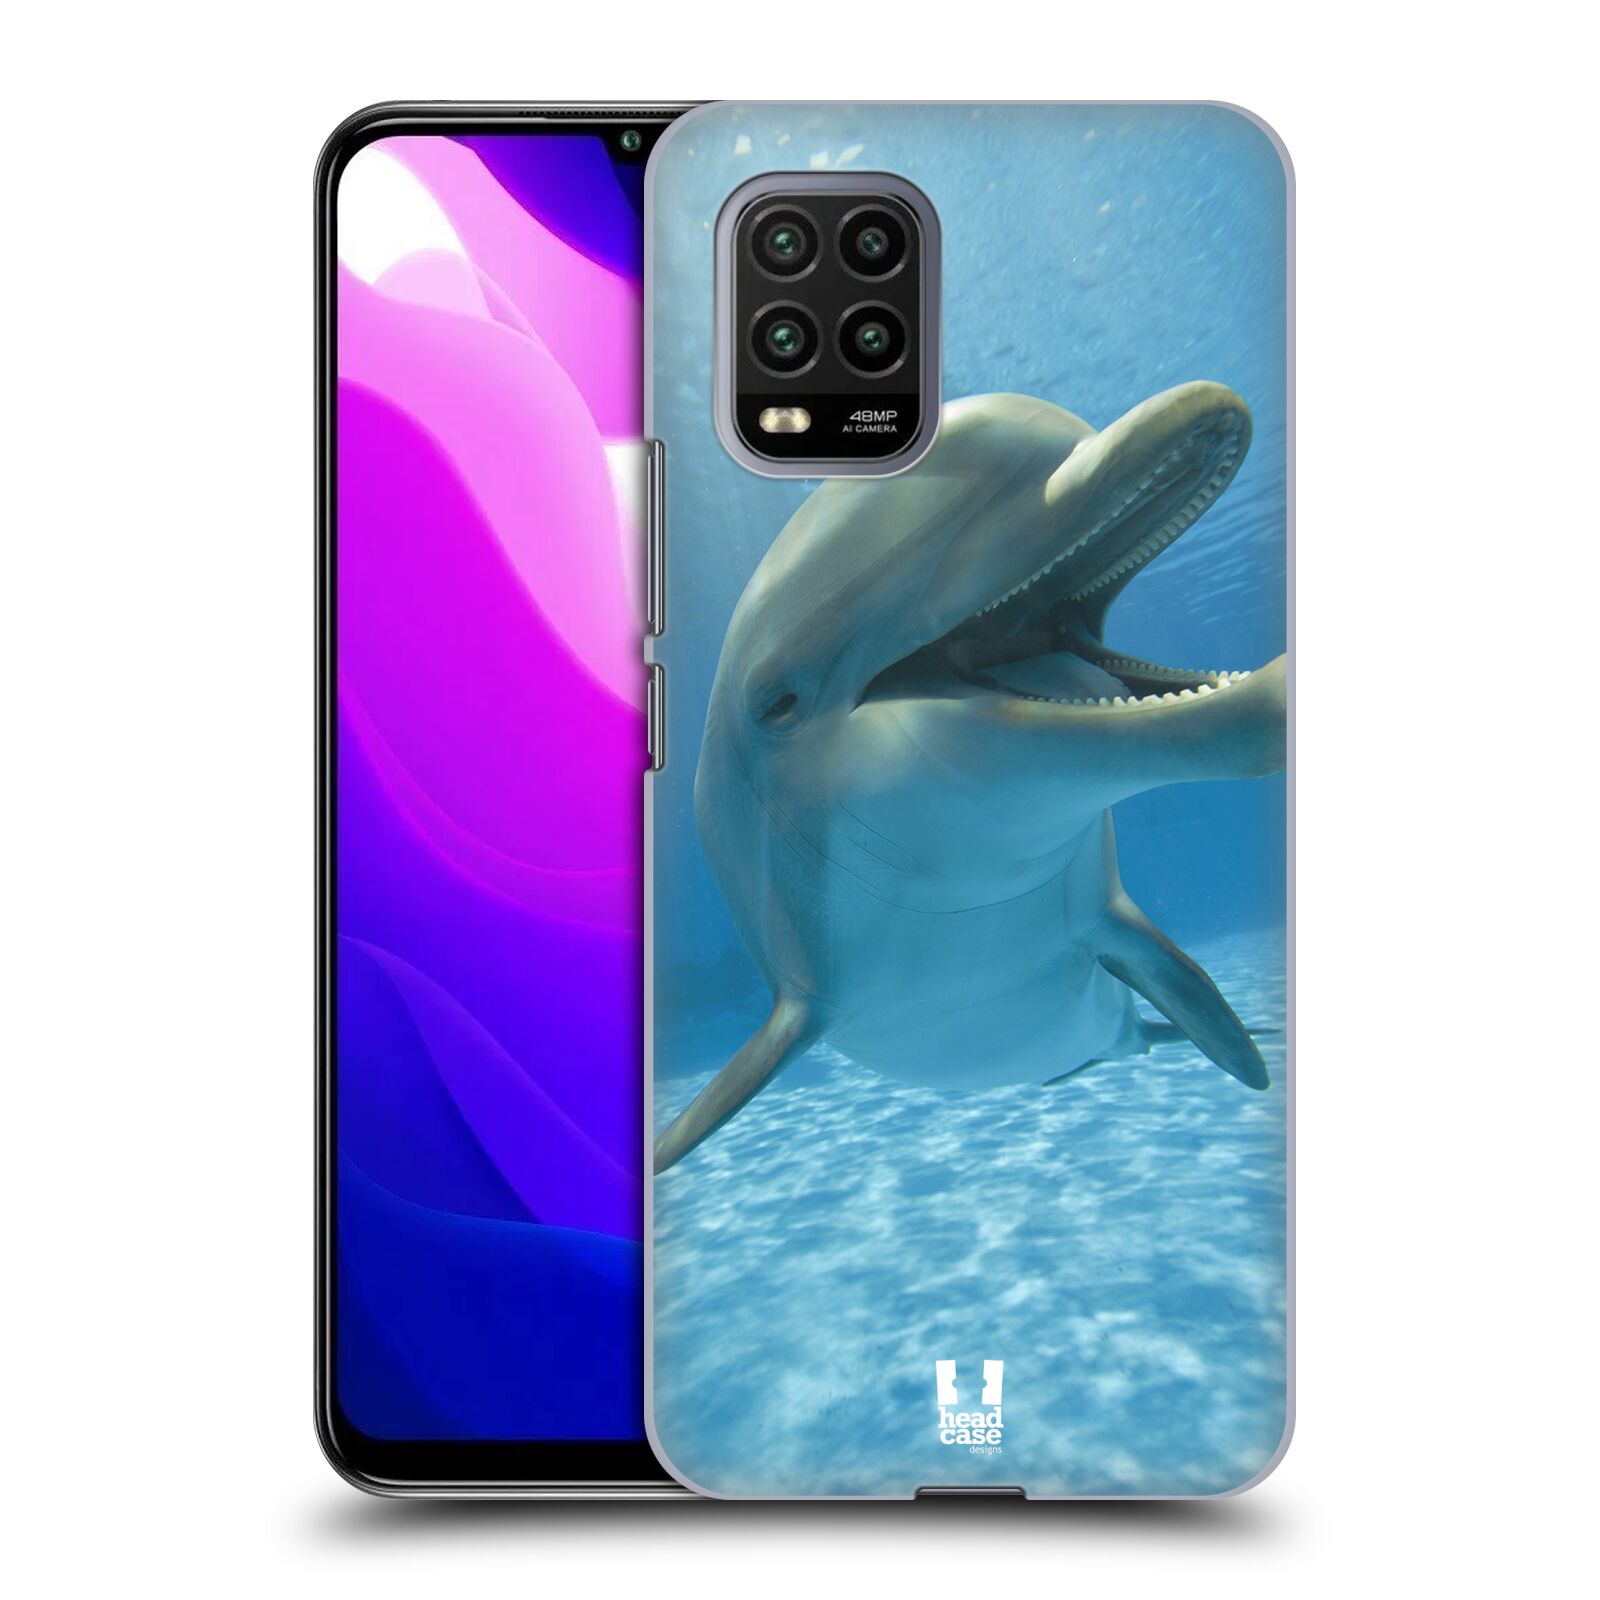 Zadní obal pro mobil Xiaomi Mi 10 LITE - HEAD CASE - Svět zvířat delfín v moři